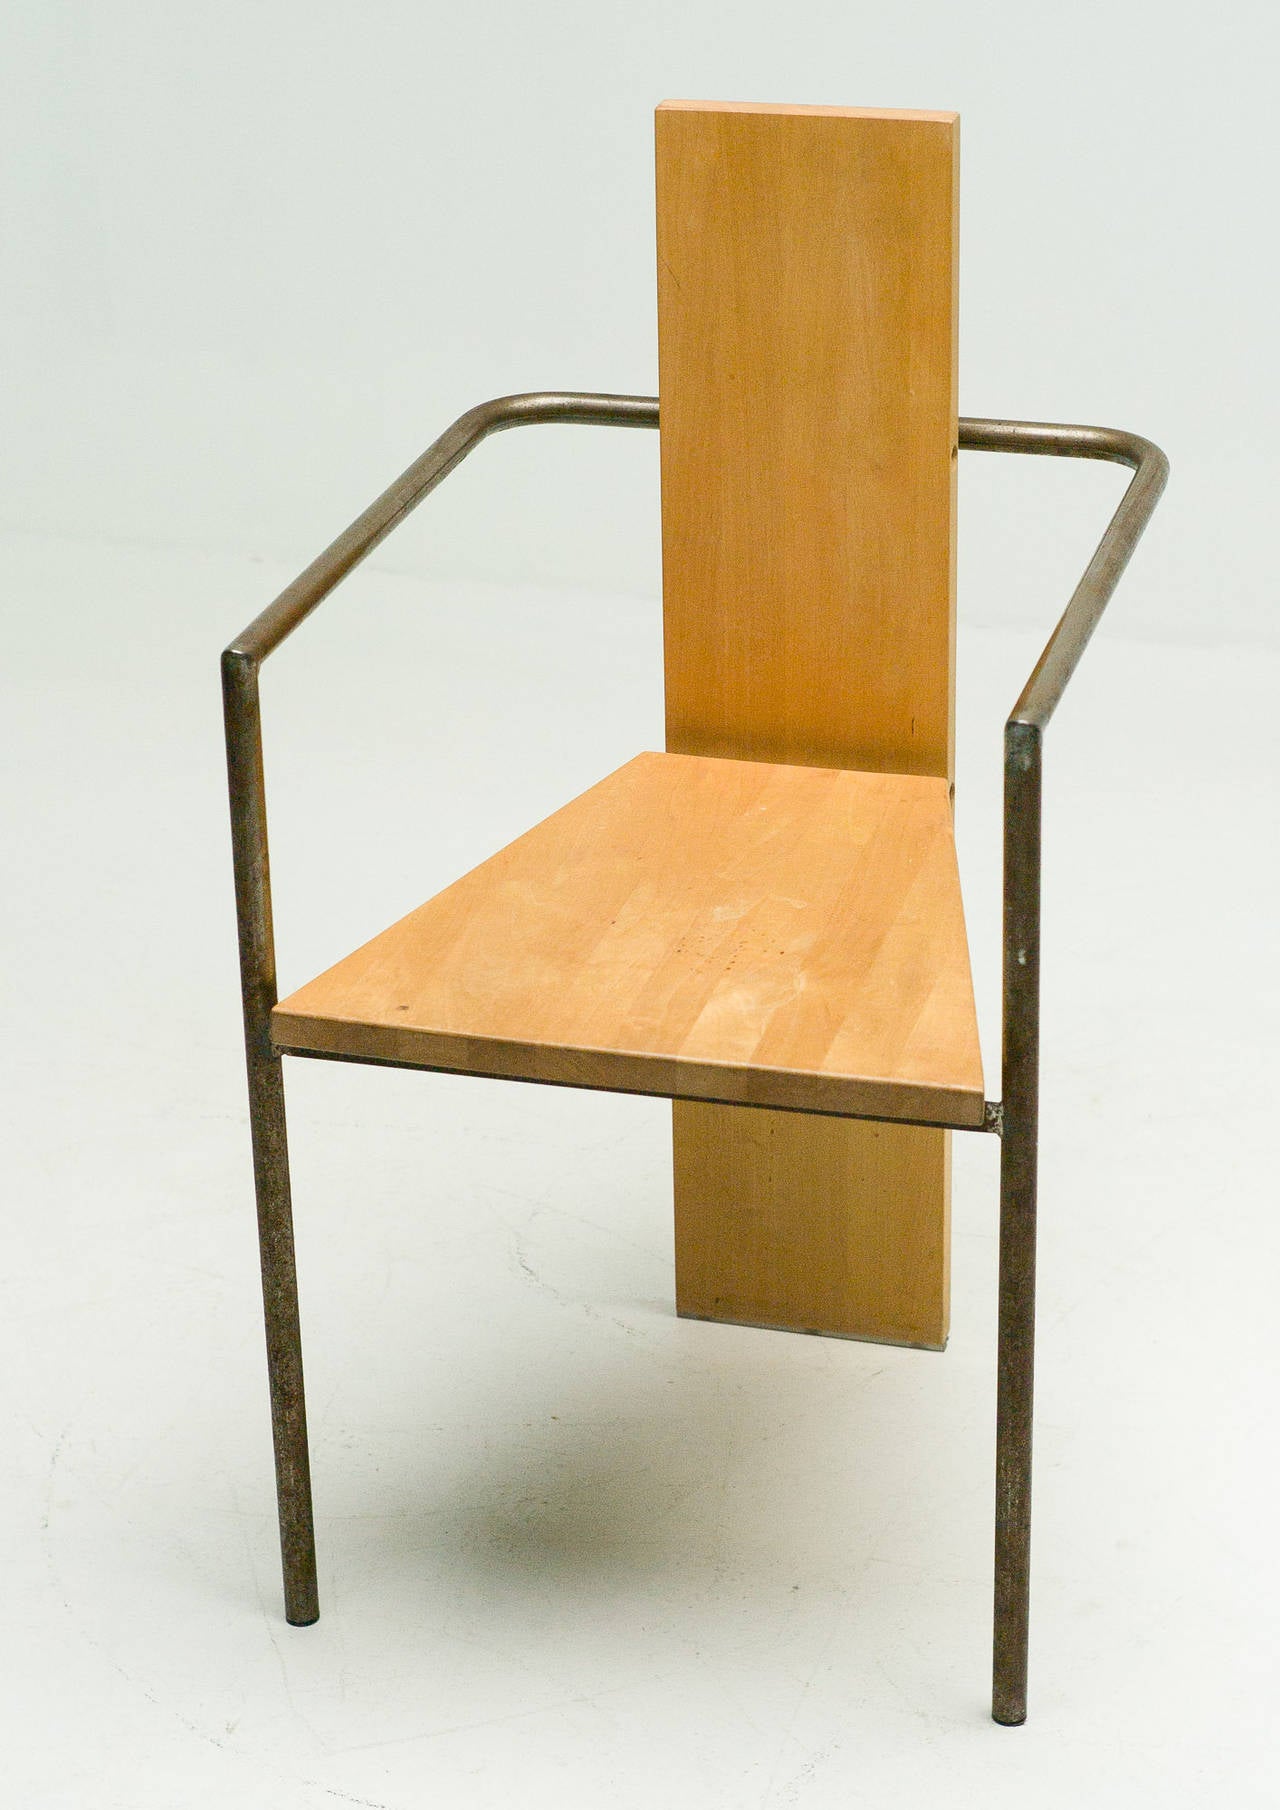 concrete chair jonas bohlin